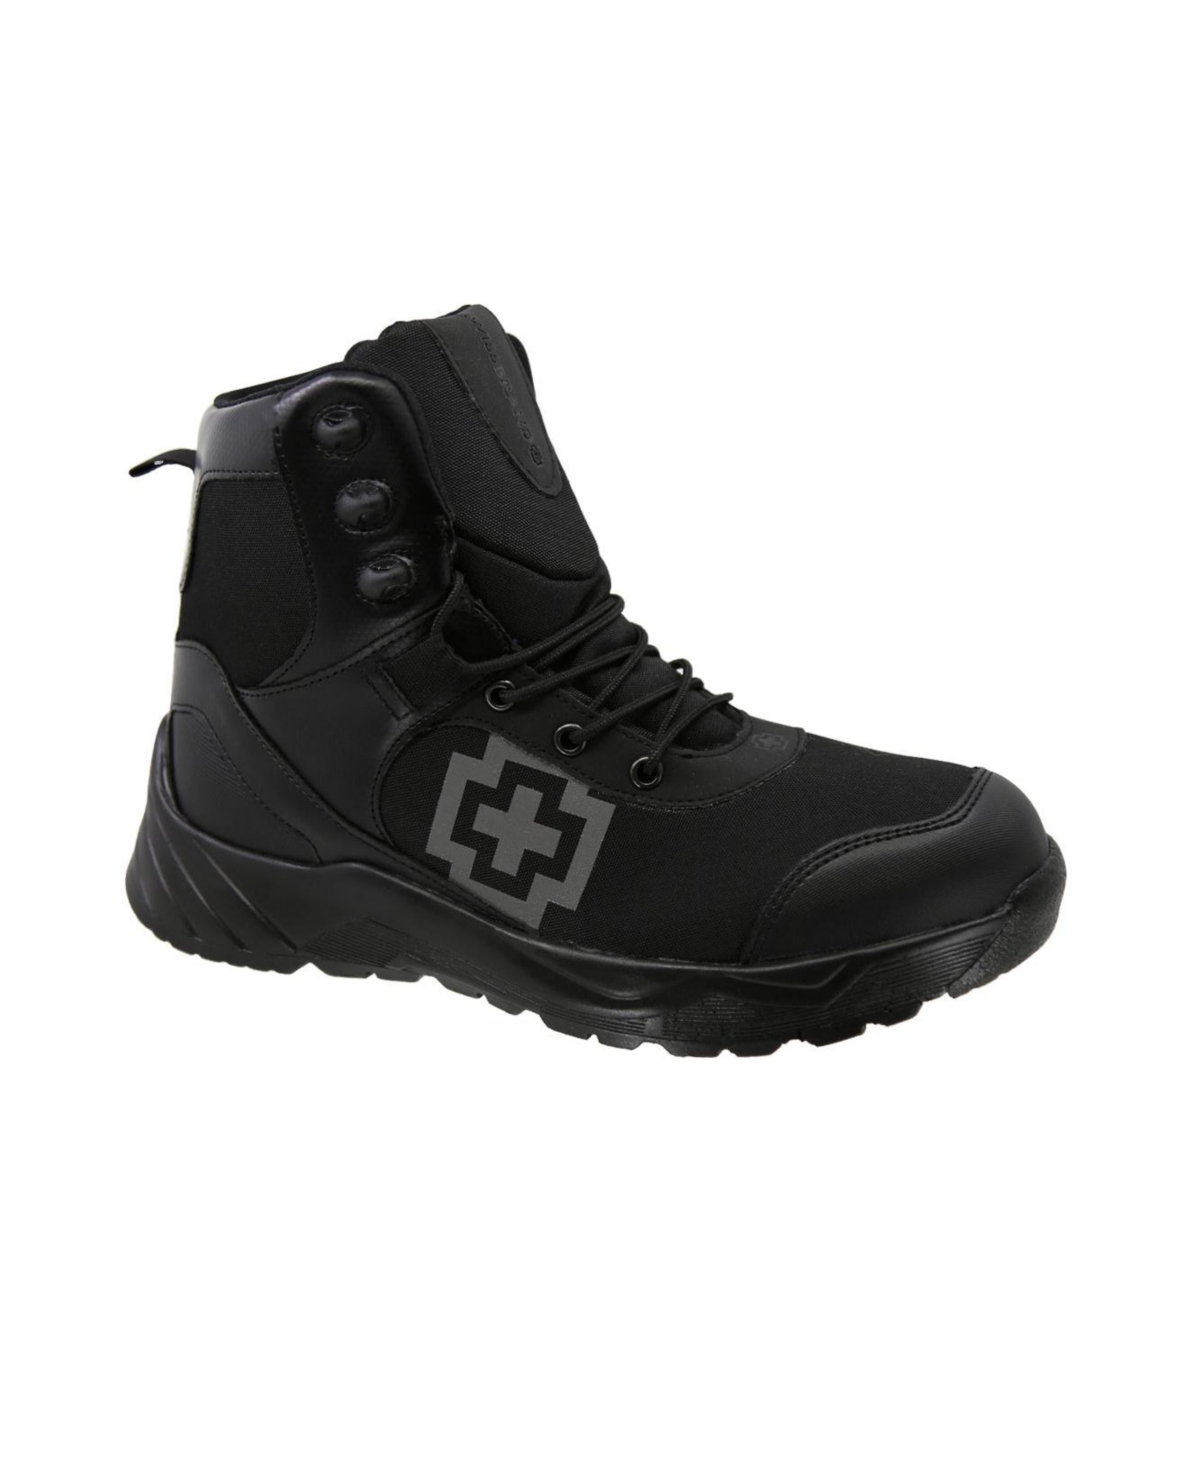 Men's Tactical Boots Brienz Black 491 - Black